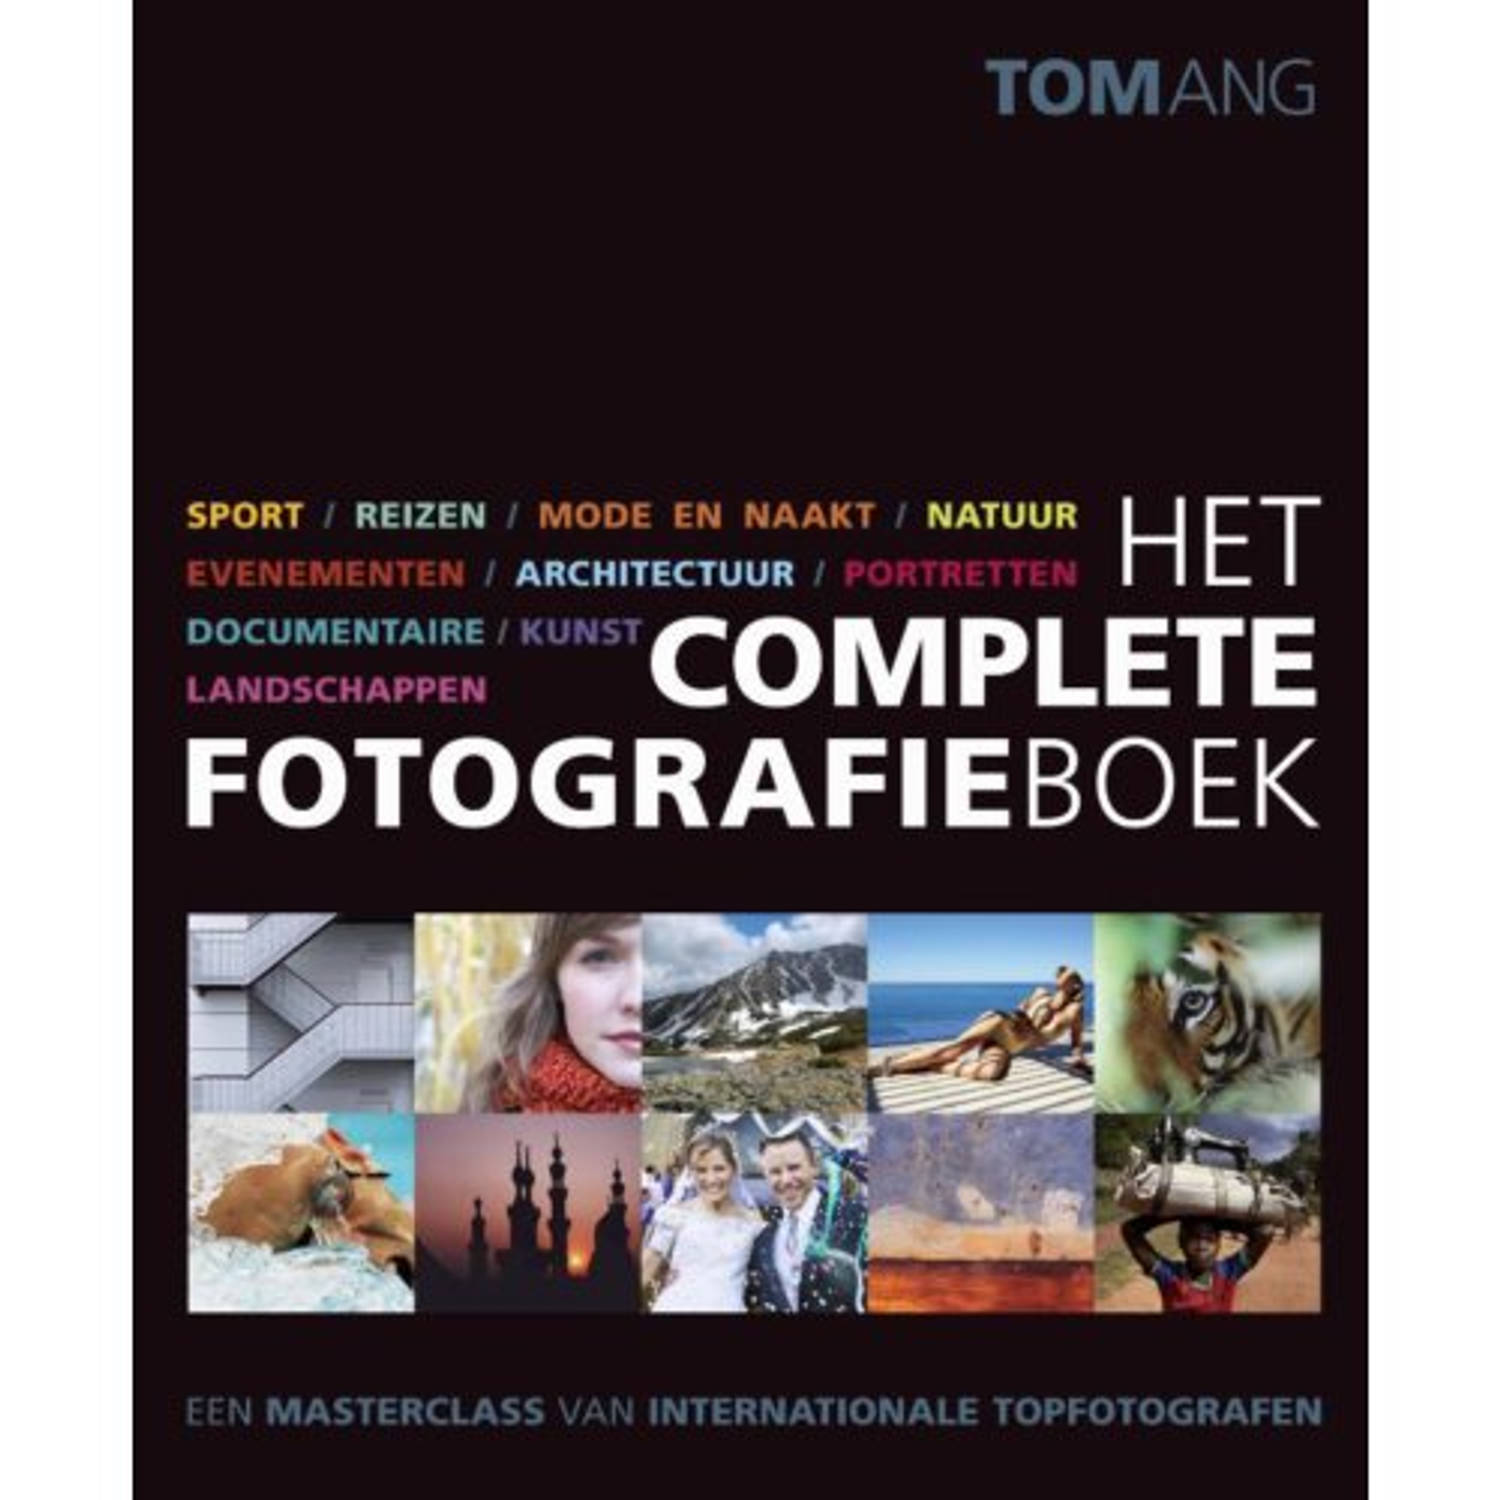 Het Complete Fotografieboek